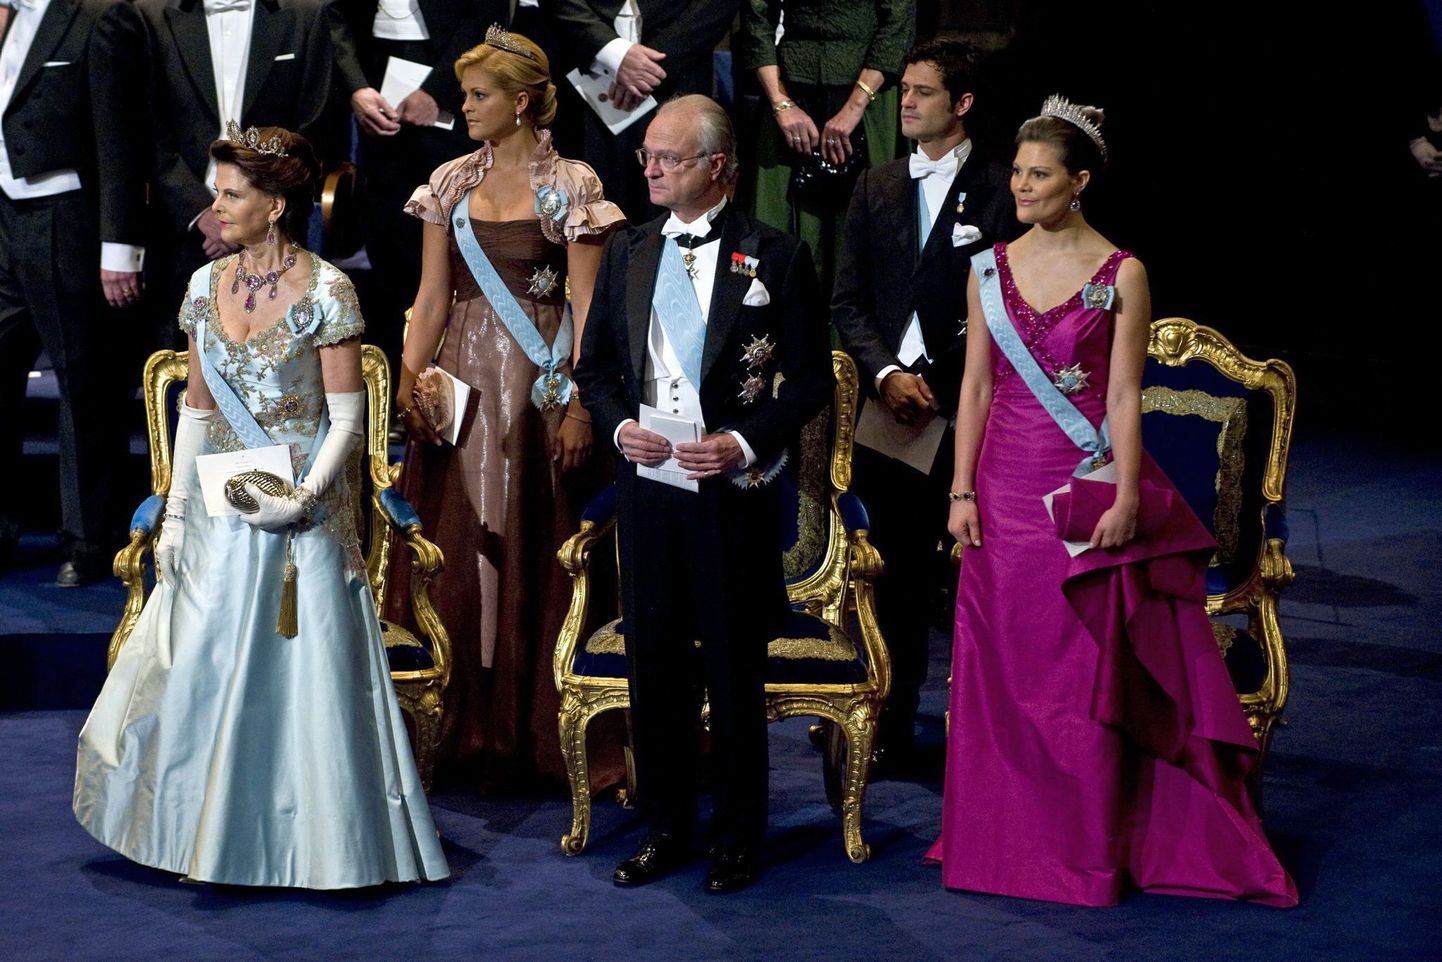 Rootsi kuninglik perekond: kuninganna Silvia, kuningas Carl XVI Gustav, kroonprintsess Victoria, printsess Madeleine ja prints Carl Philip